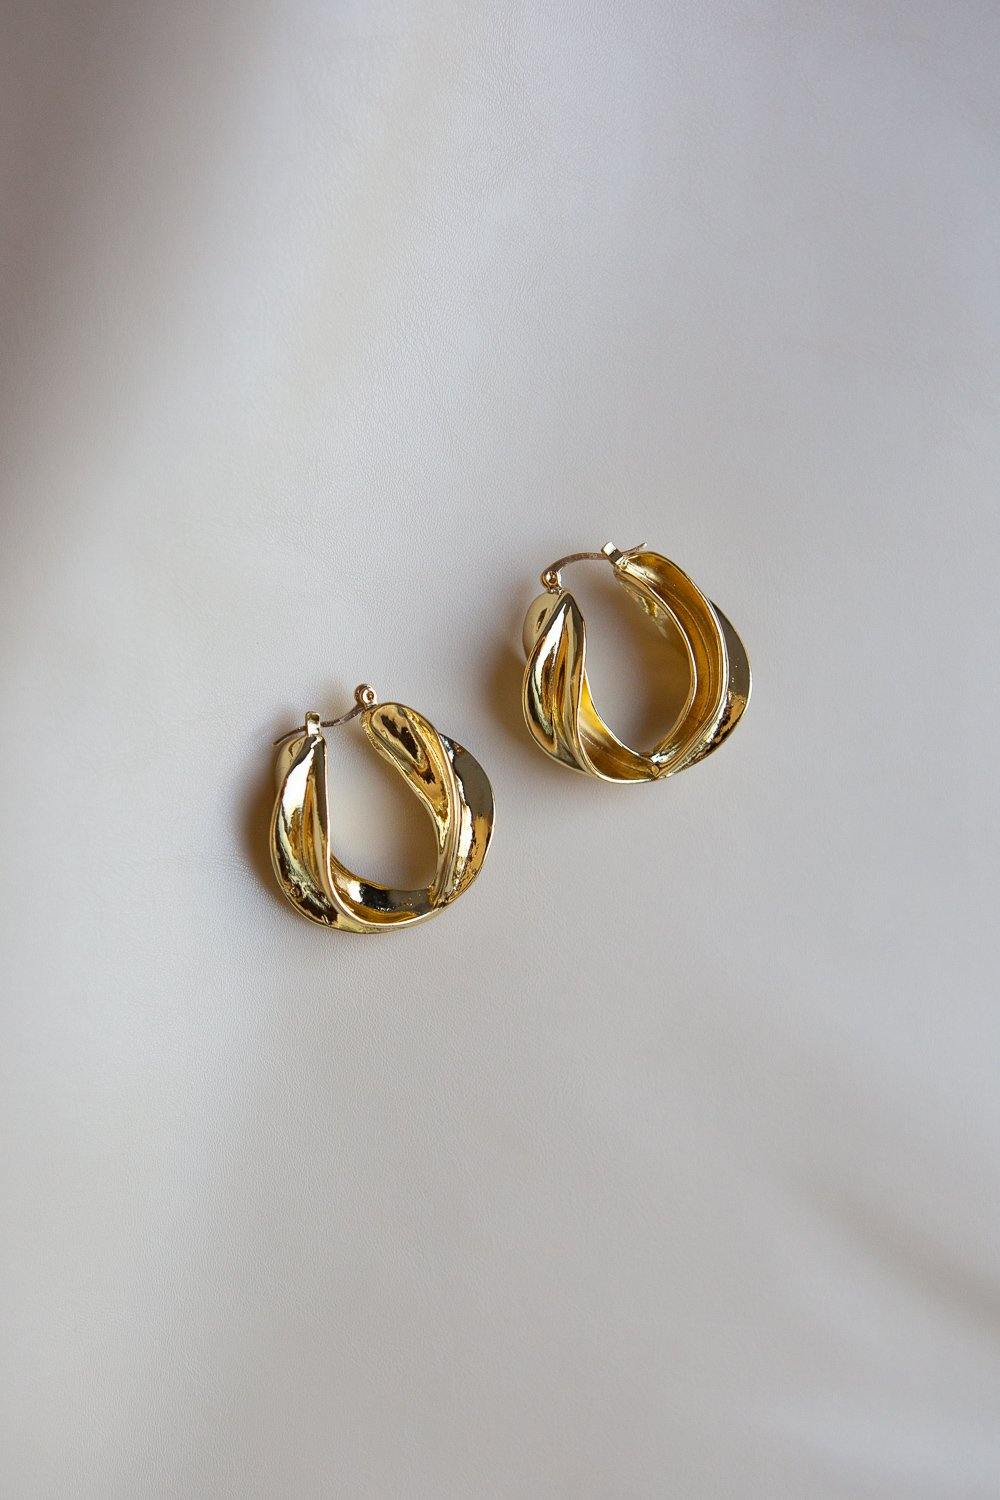 Large Gold Twisted Swirl Earrings - Wynter Bloom